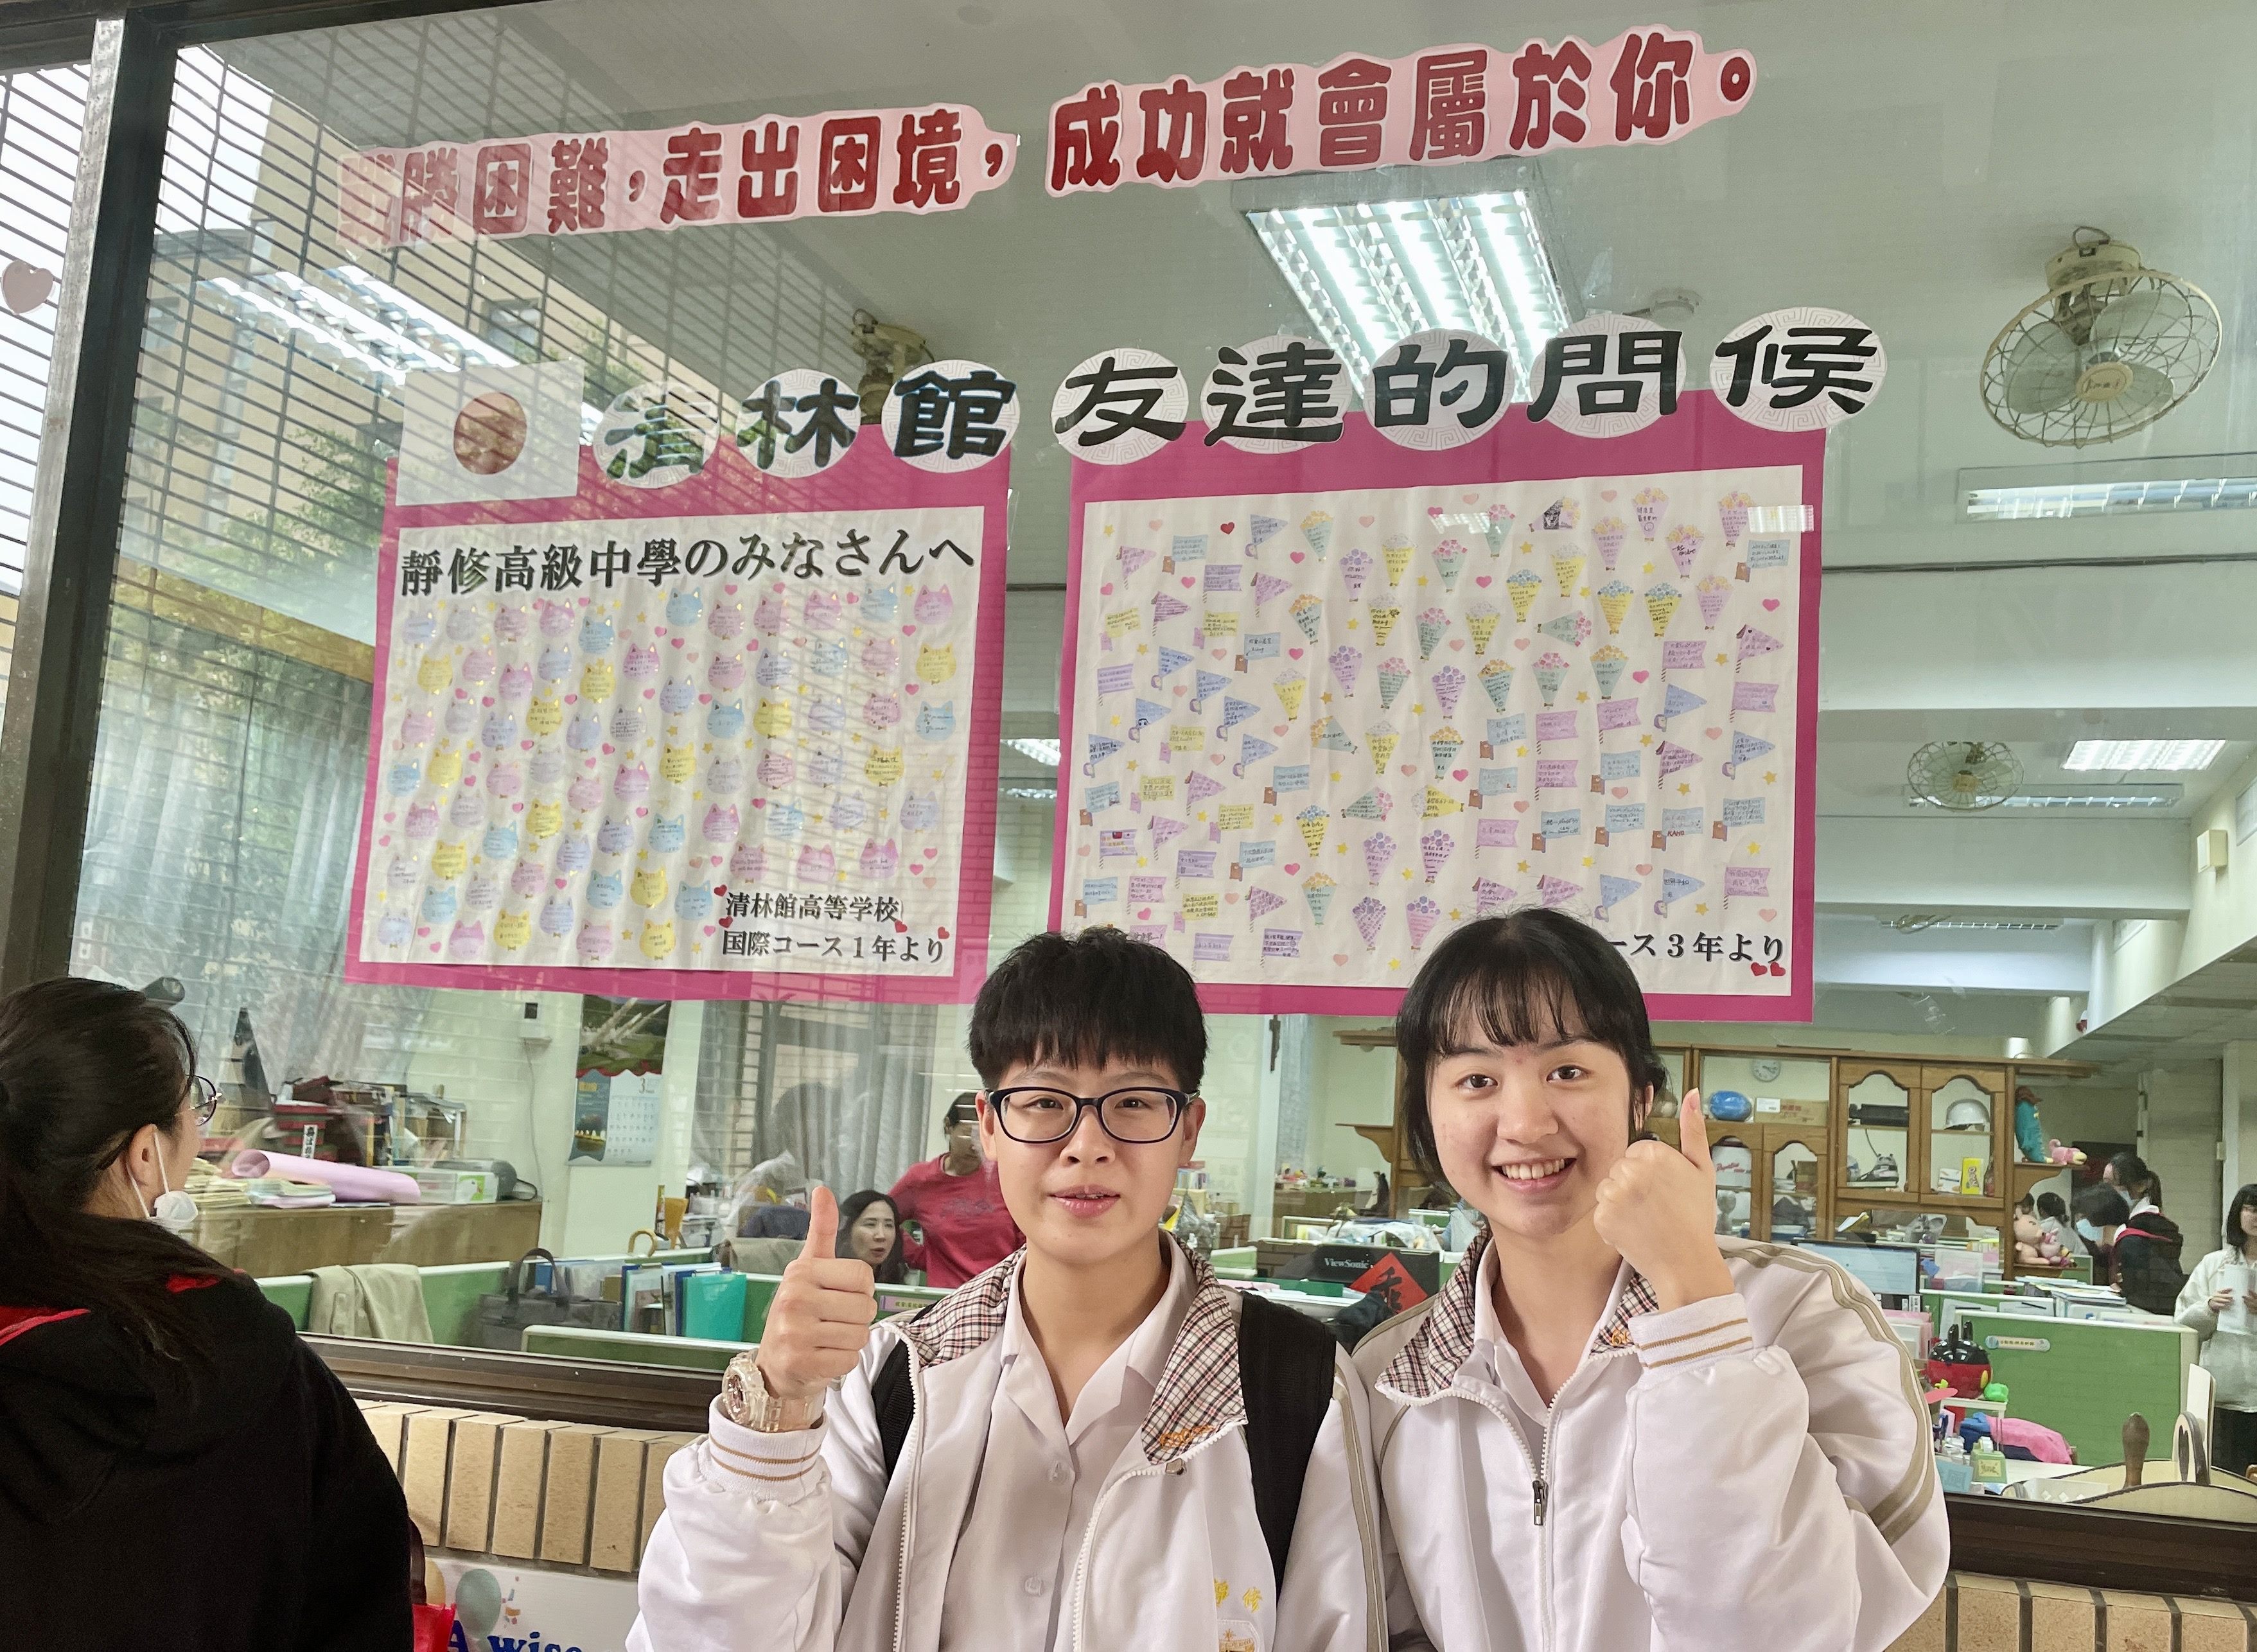 臺北市政府教育局 一般公告 事後新聞稿靜修高中 來自日本姊妹校 清林館高中的問候